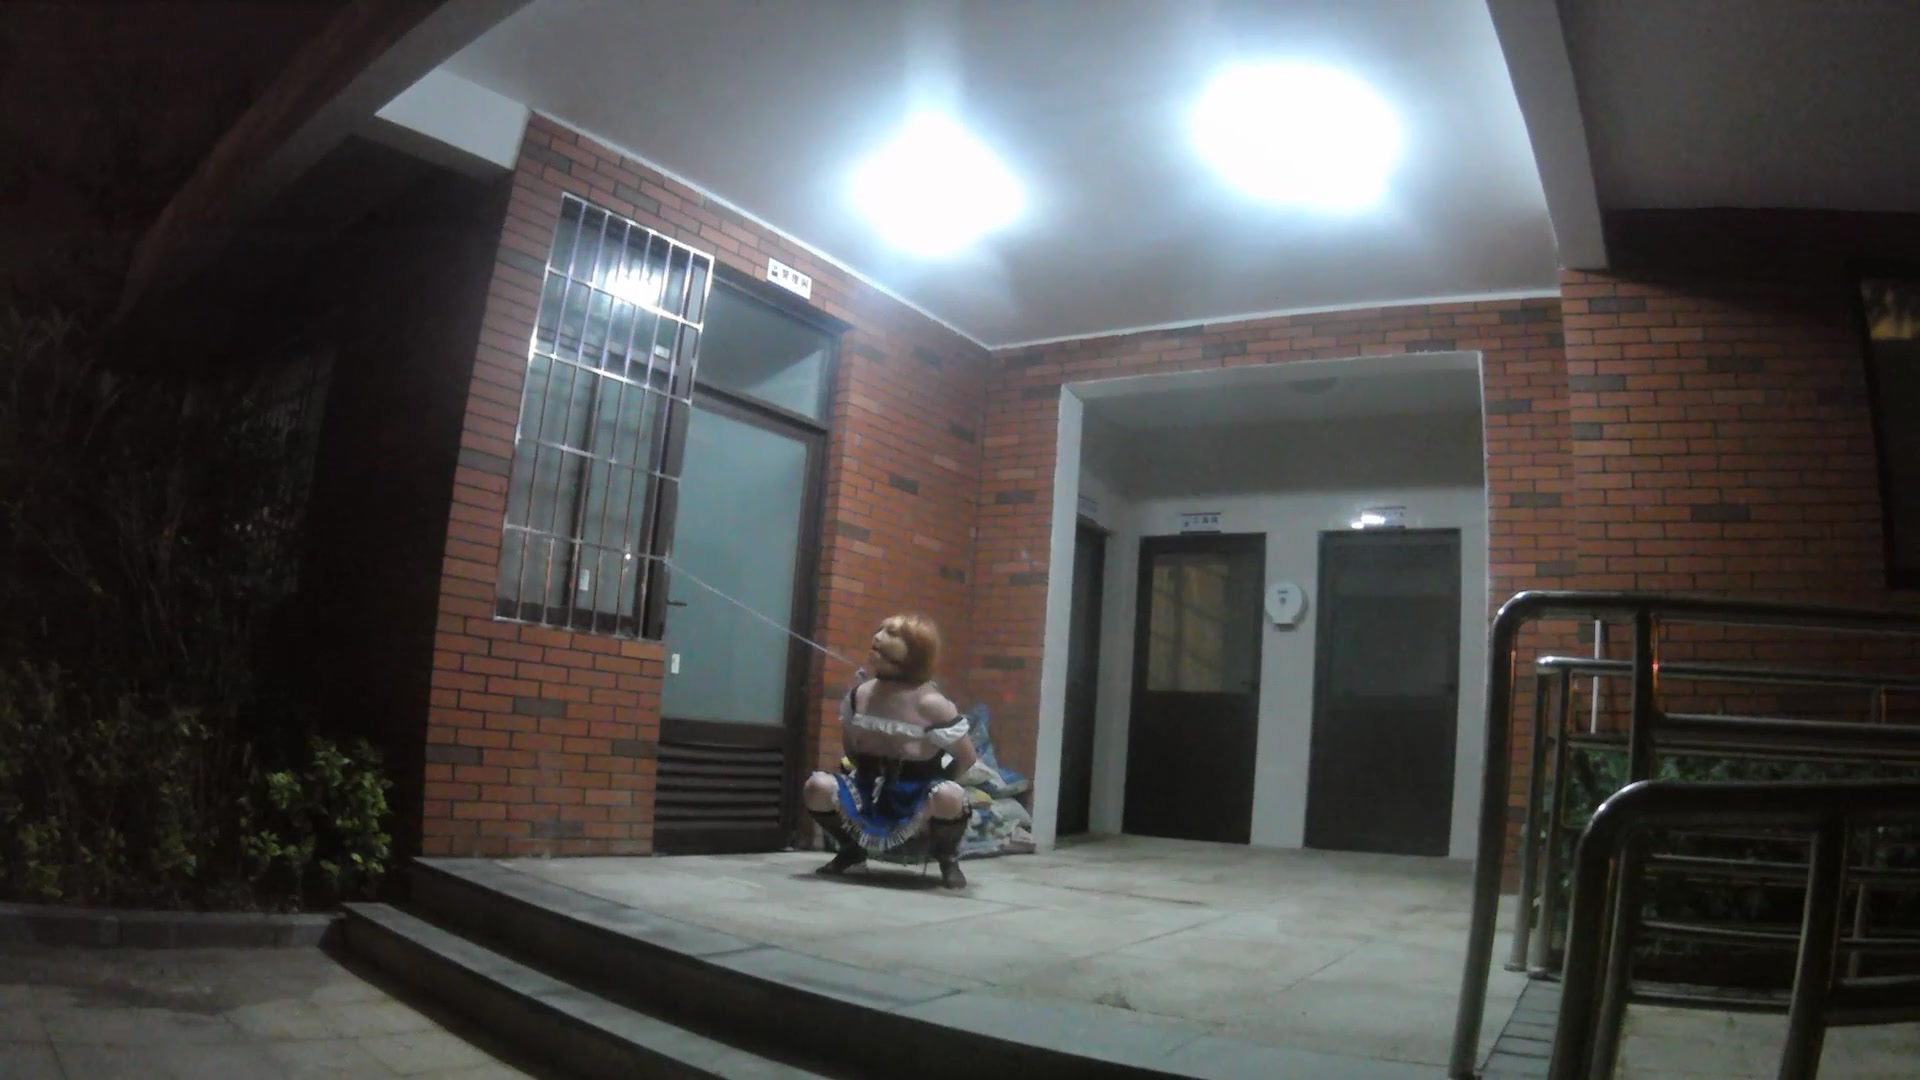 slut locked herself outside the public man's toilet